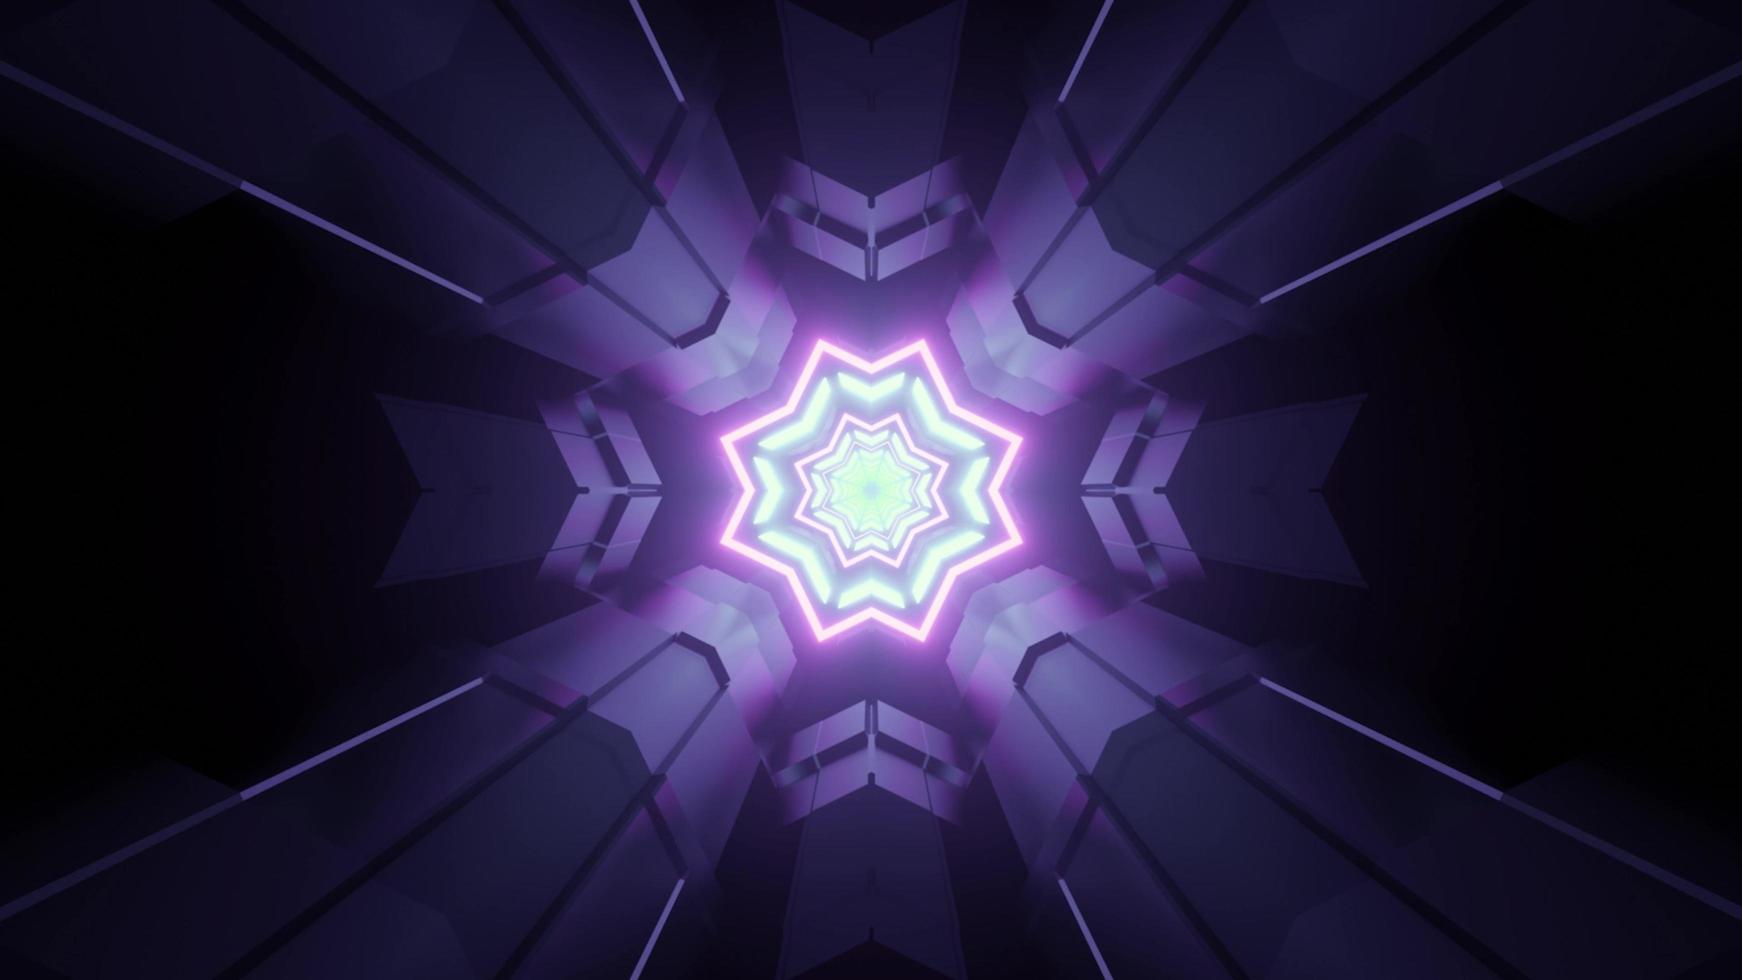 túnel virtual em ilustração 3d com iluminação roxa de néon foto